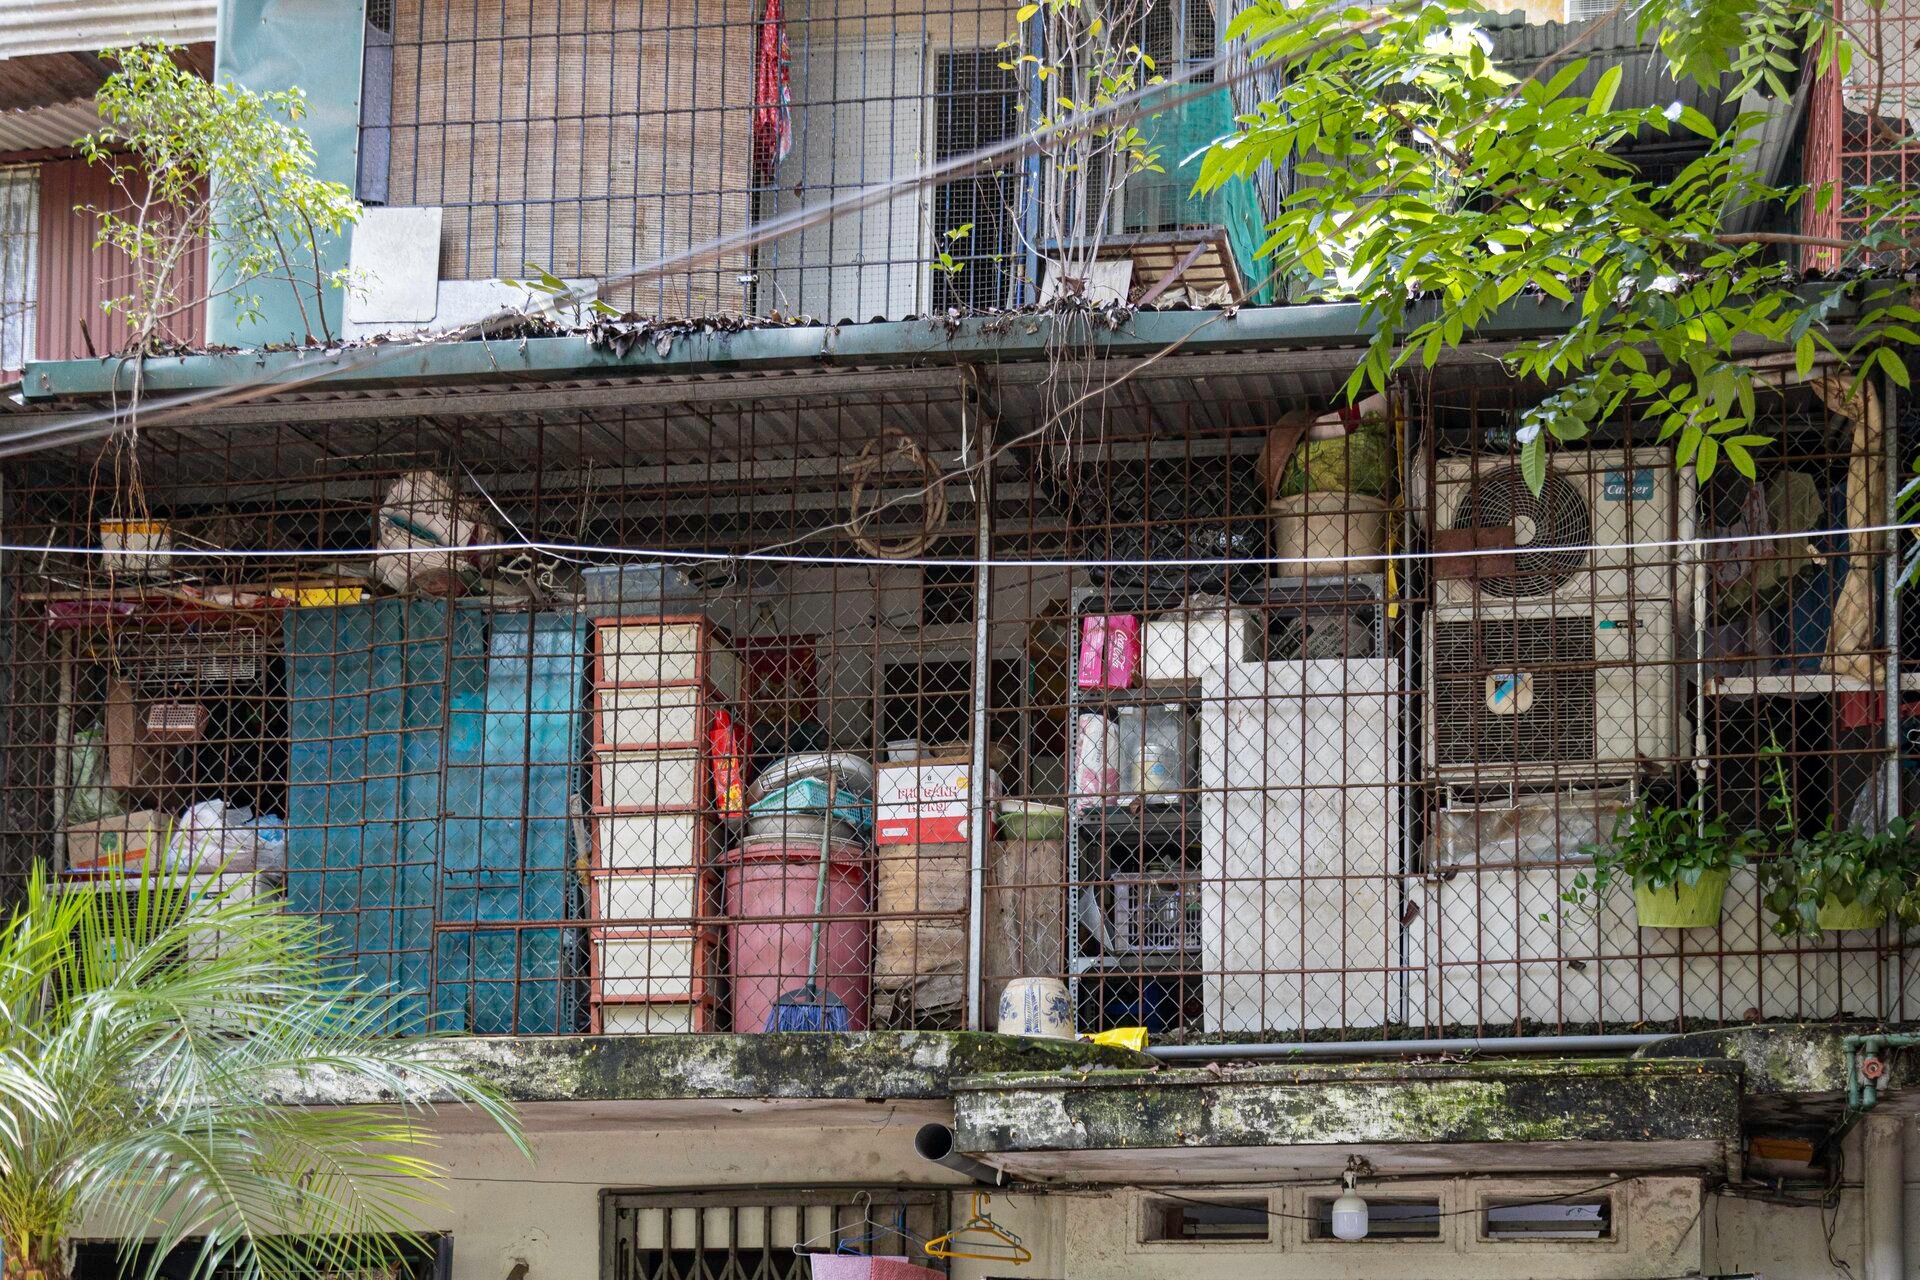 Ma trận chuồng cọp san sát ở Hà Nội: Những khung sắt nhốt người trong hỏa hoạn - 5